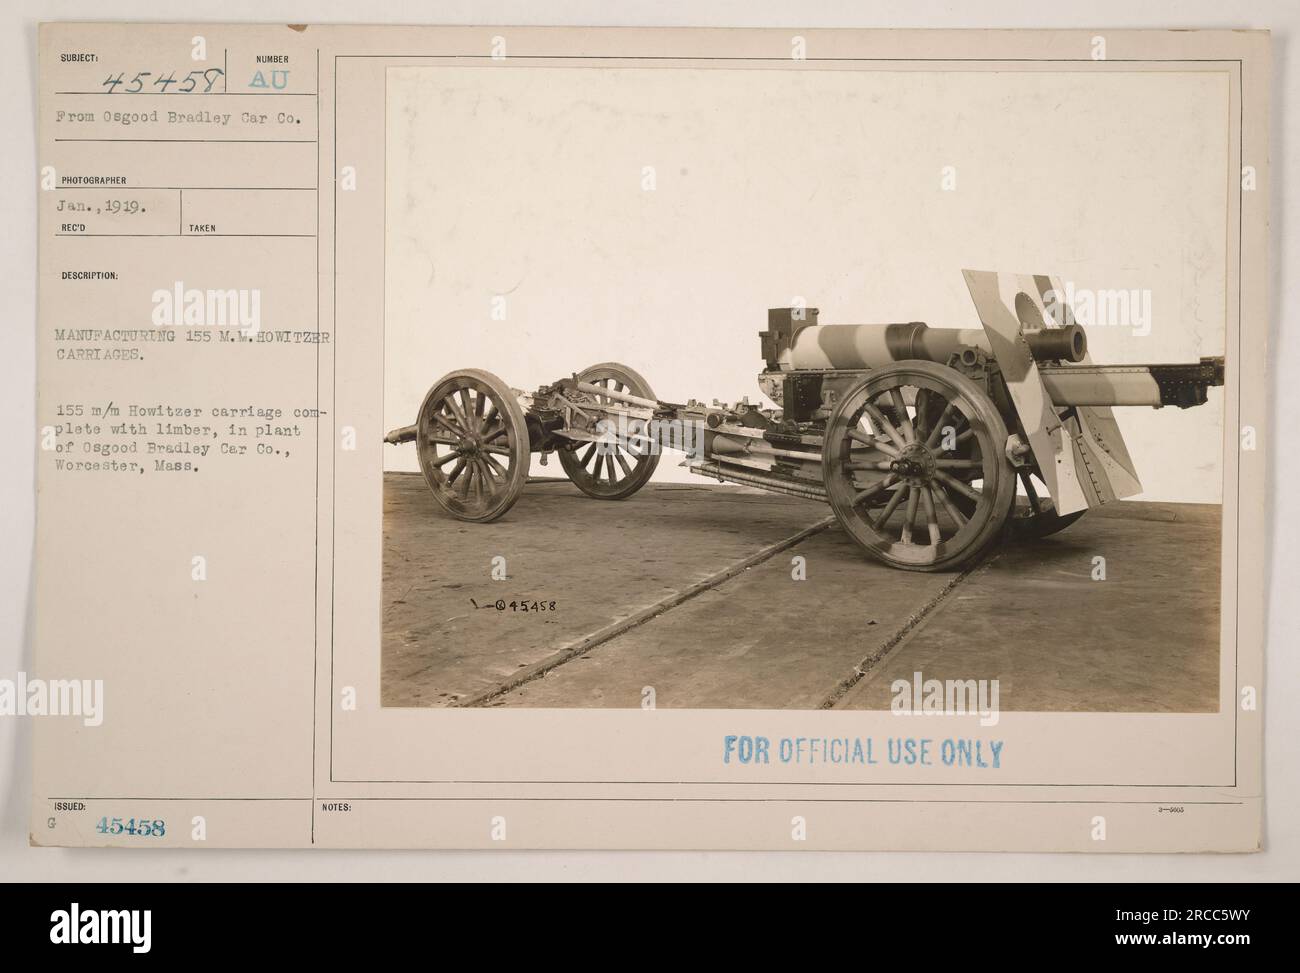 Fabricación 155 M.M. Vagones de obús en el Osgood Bradley Car Co. En Worcester, Massachusetts. La foto muestra un carro Howitzer de 15 m/m completamente montado con un limber. Tomada en enero de 1919, la imagen está marcada con el número '45458 AU' y está etiquetada solo para uso oficial. Foto de stock